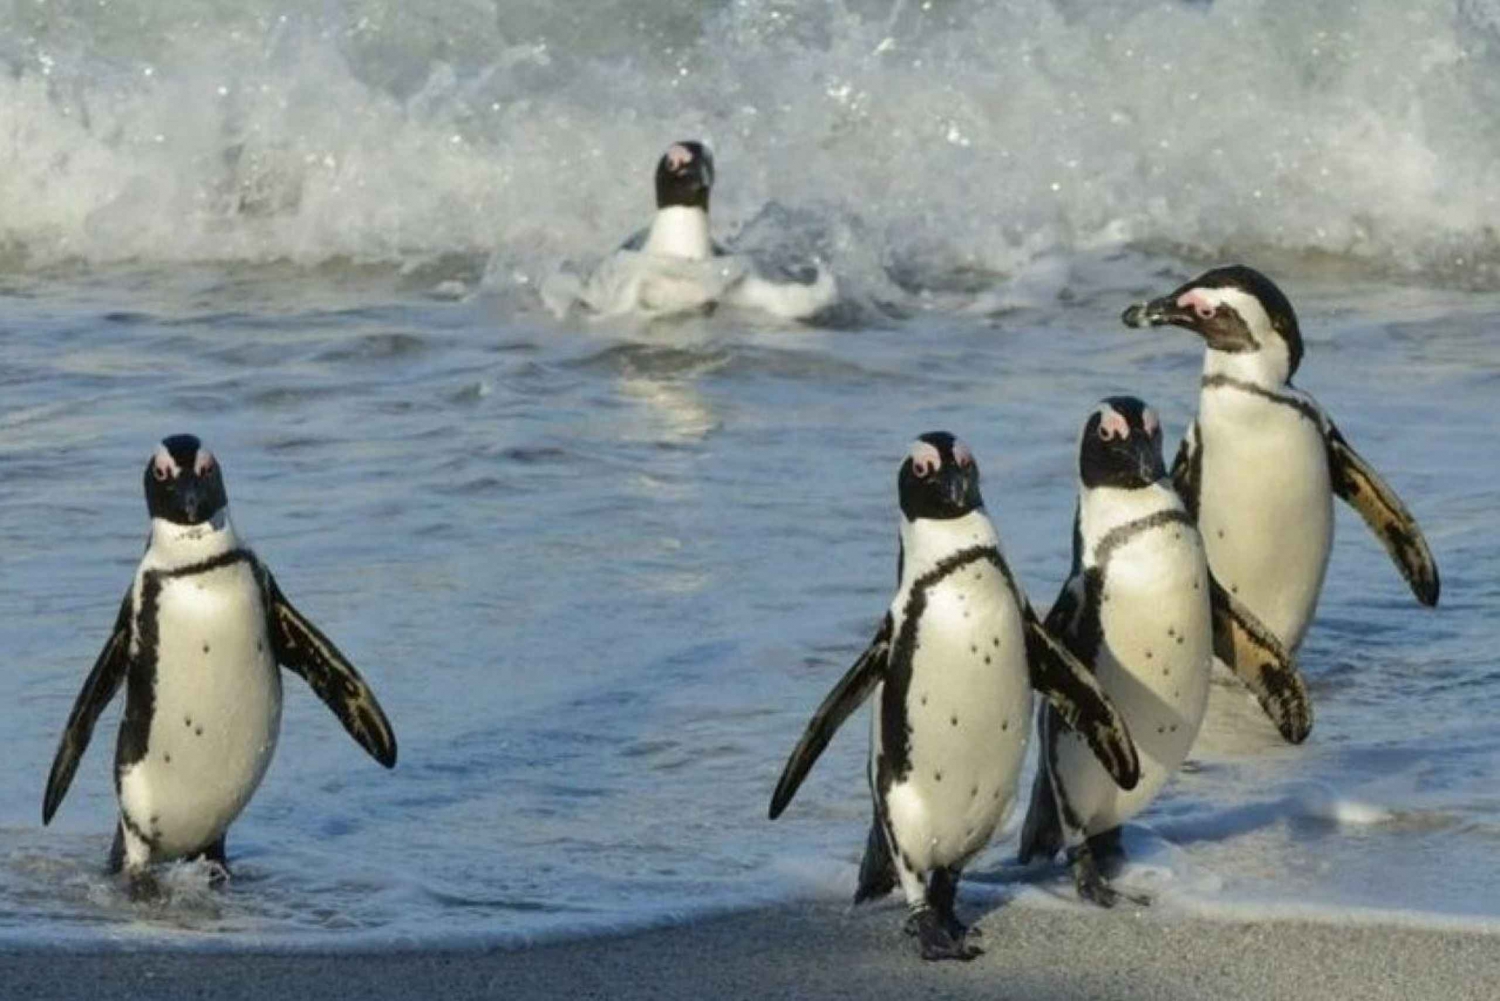 Visite d'une jounée au Cap : Cap de Bonne Espérance et visite des pingouins